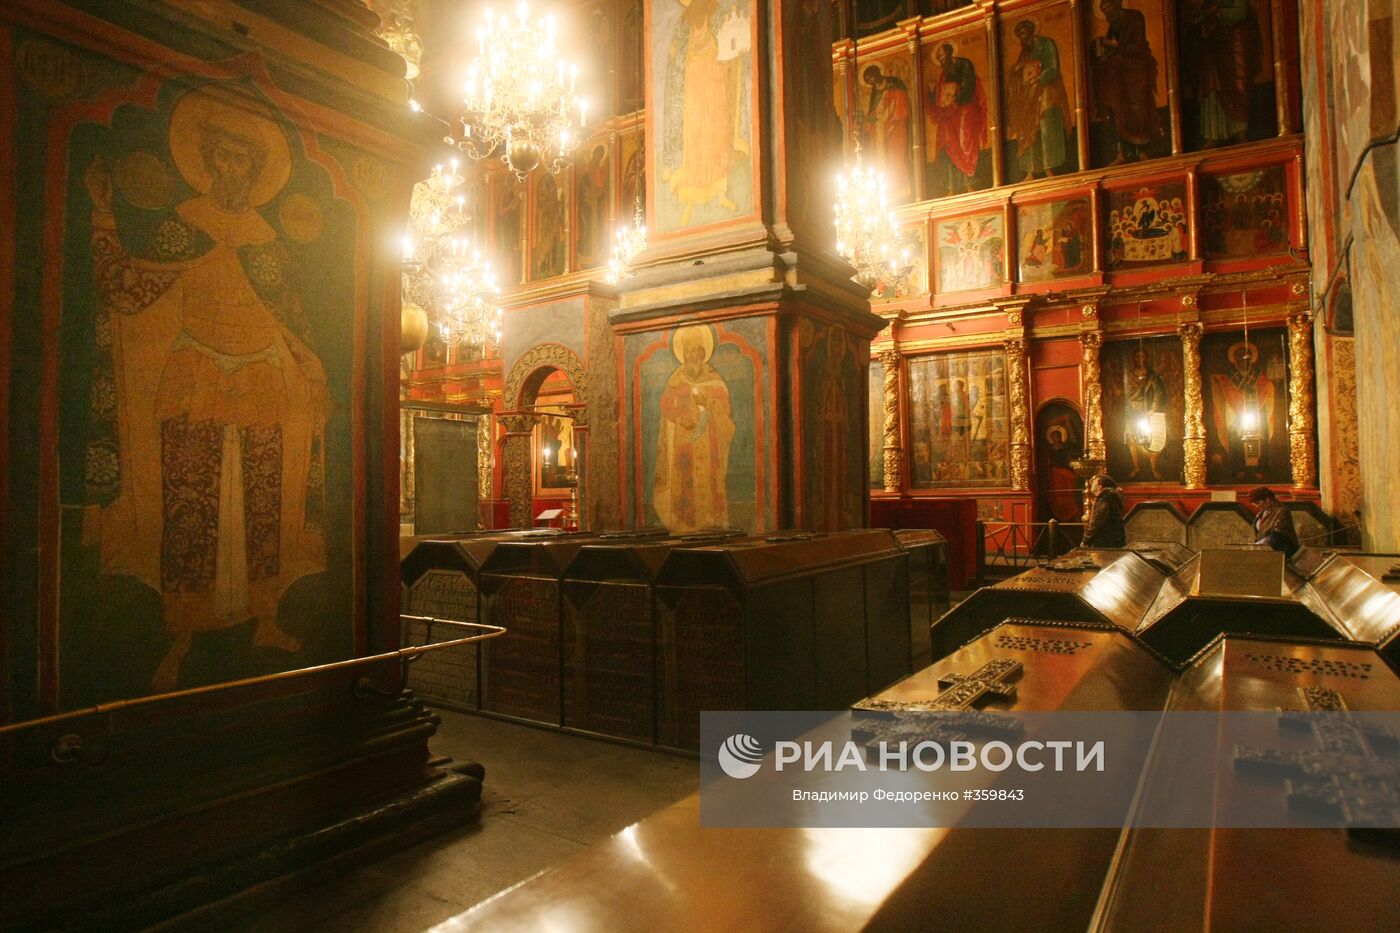 Архангельский собор в Москве усыпальница